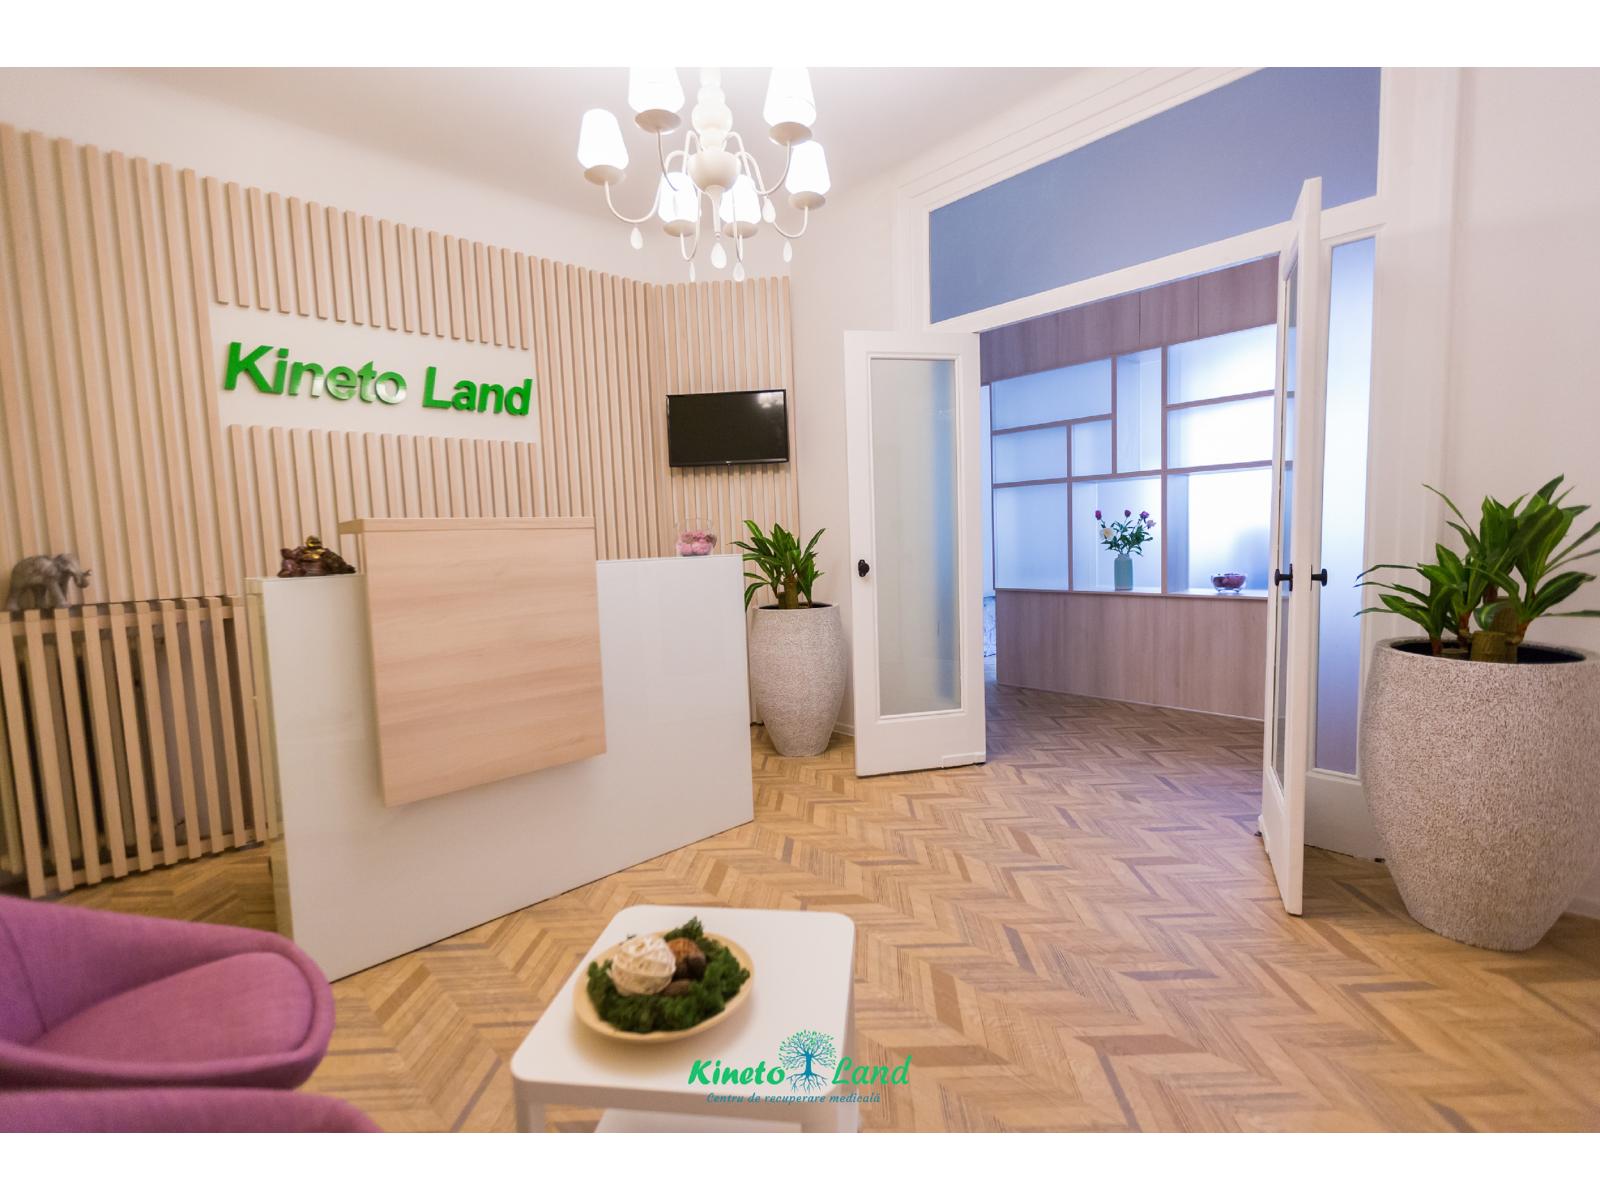 Kineto Land - acasa_slide_resize.jpg